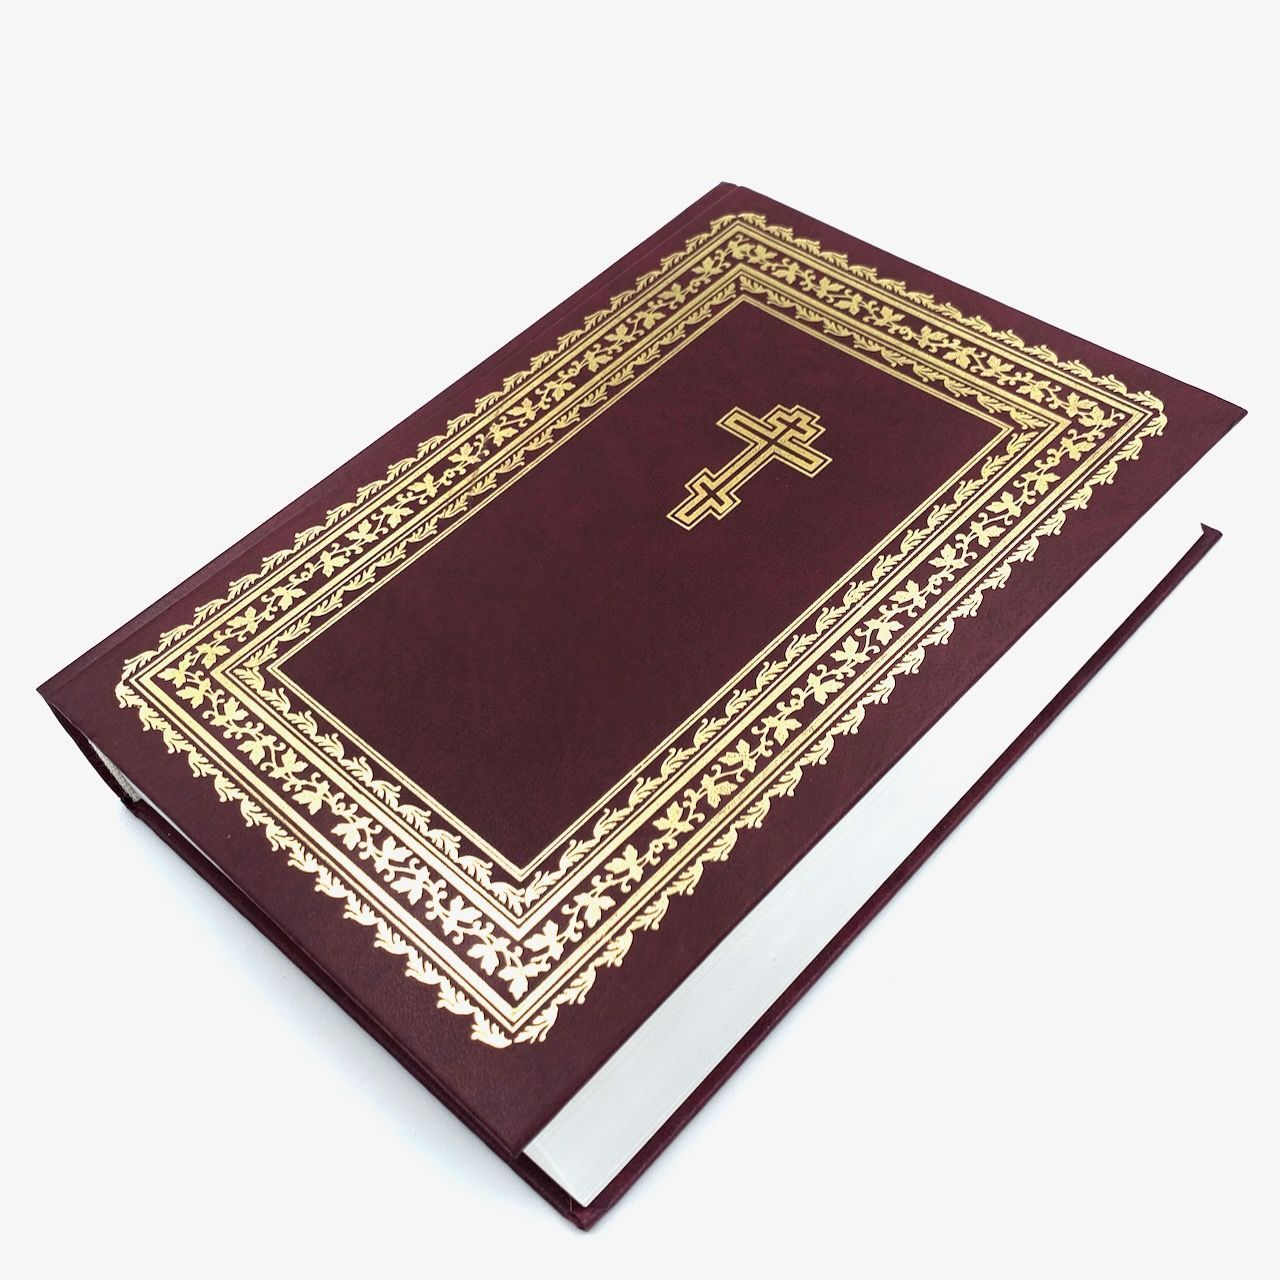 БИБЛИЯ 073 DC, код 1006, с неканоническими книгами Ветхого Завета (77 книг), 170*242 мм